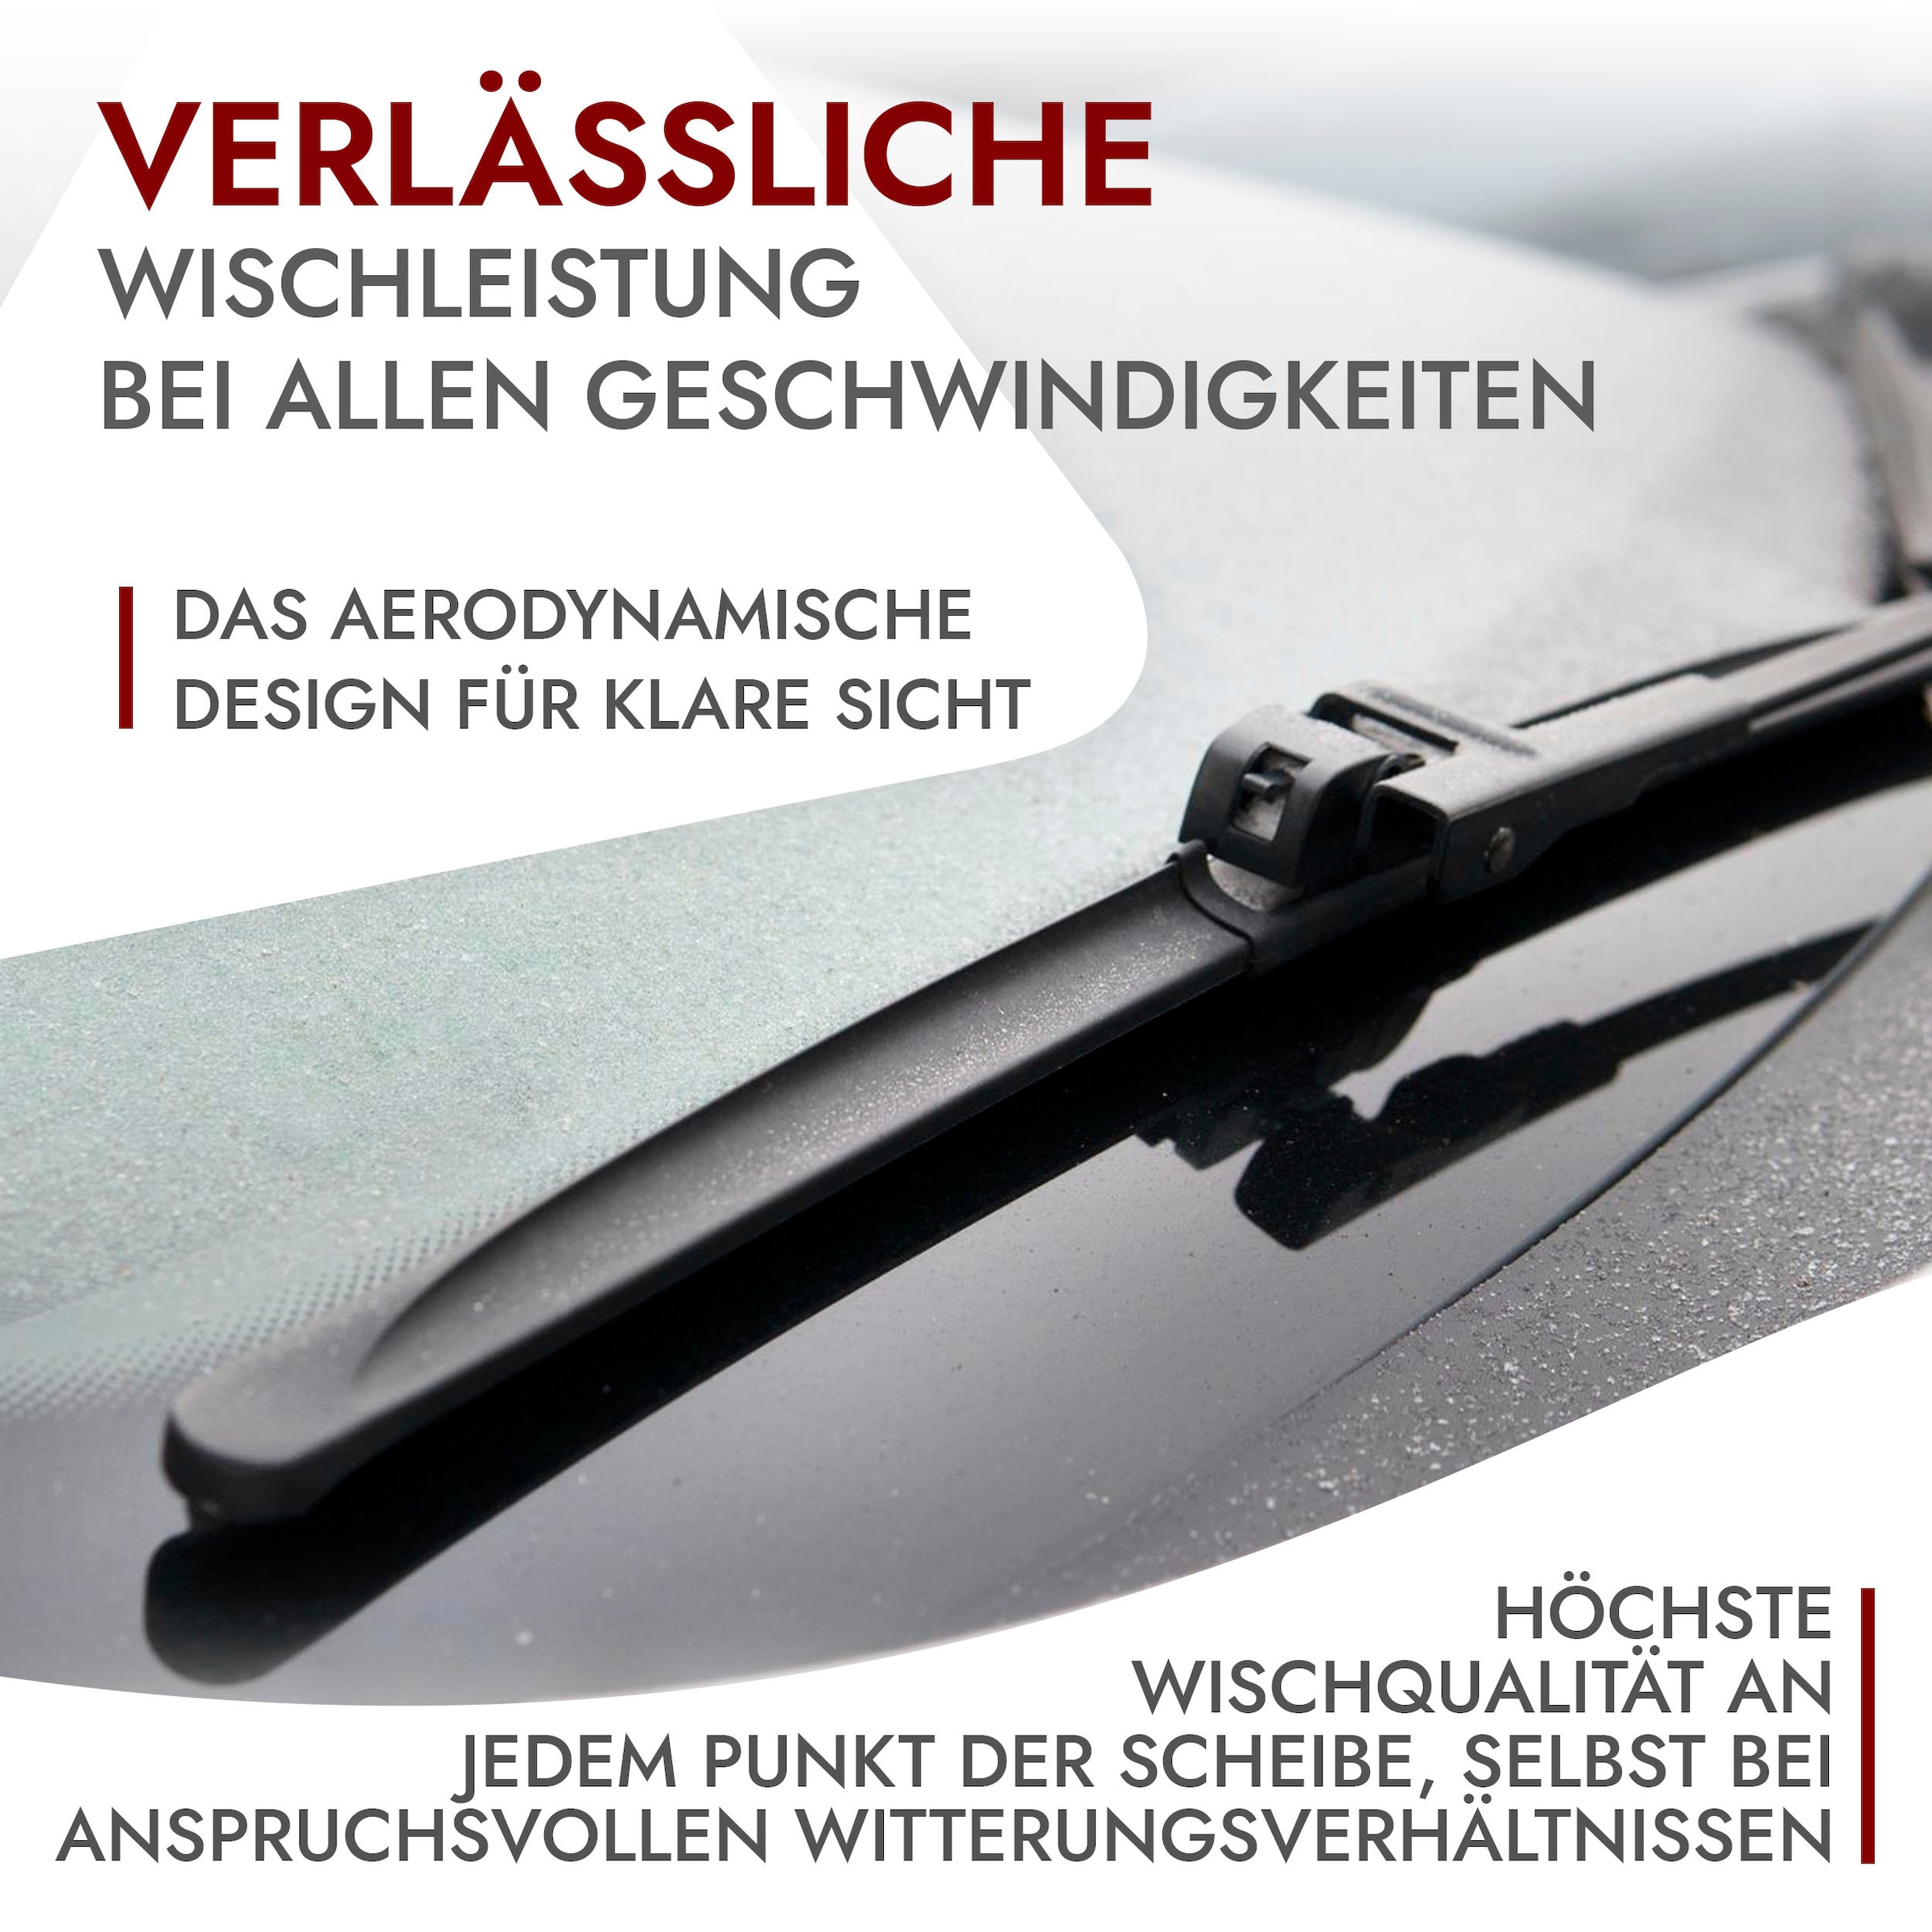 RECAMBO Scheibenwischblätter für VW TOURAN - BJ 2003-2010 - Scheibenwischer,  Front: 700 mm + 700 mm - Heck: 400 mm - Klare Sicht, jederzeit